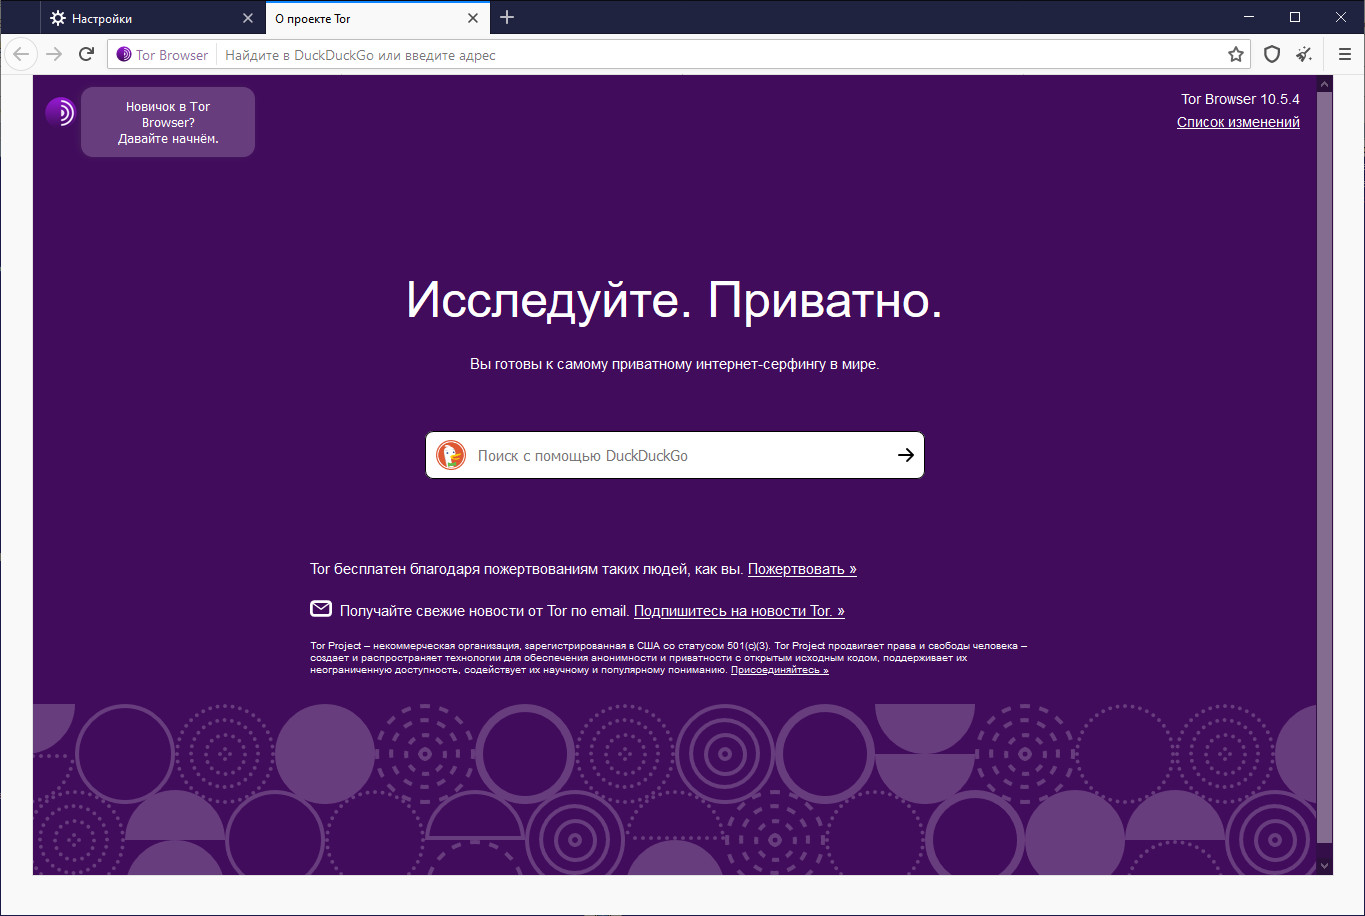 Скачать тор браузер для компьютера бесплатно даркнет скачать blacksprut на русском бесплатно даркнет